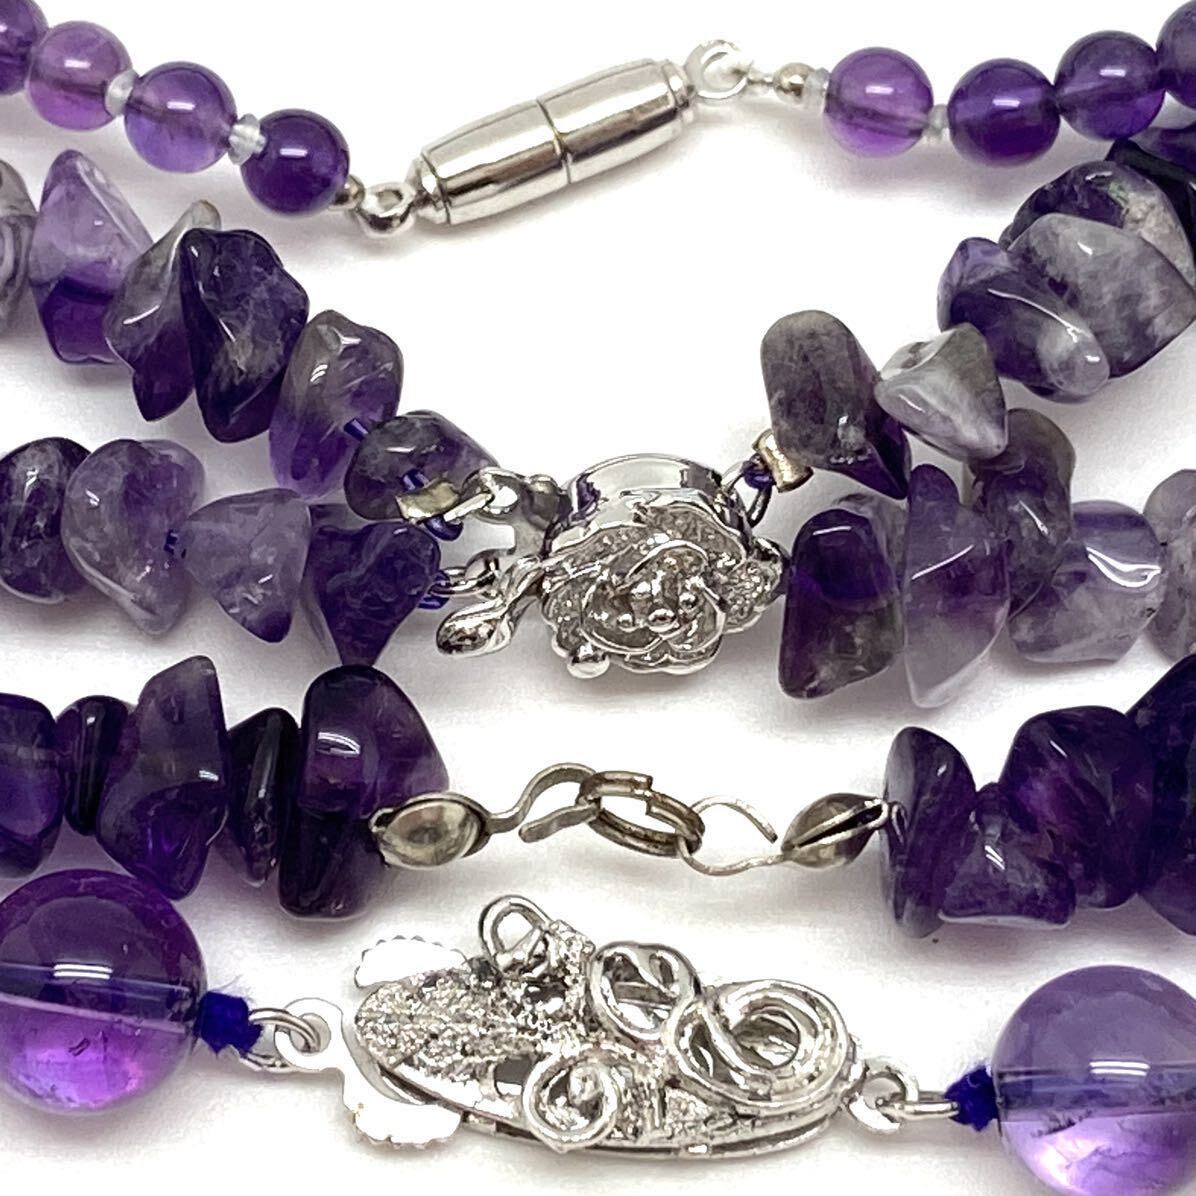 「アメシストネックレス8点おまとめ」a重量約338g アメジスト amethyst 紫水晶 necklace accessory jewelry ジュエリー silver CE0の画像4